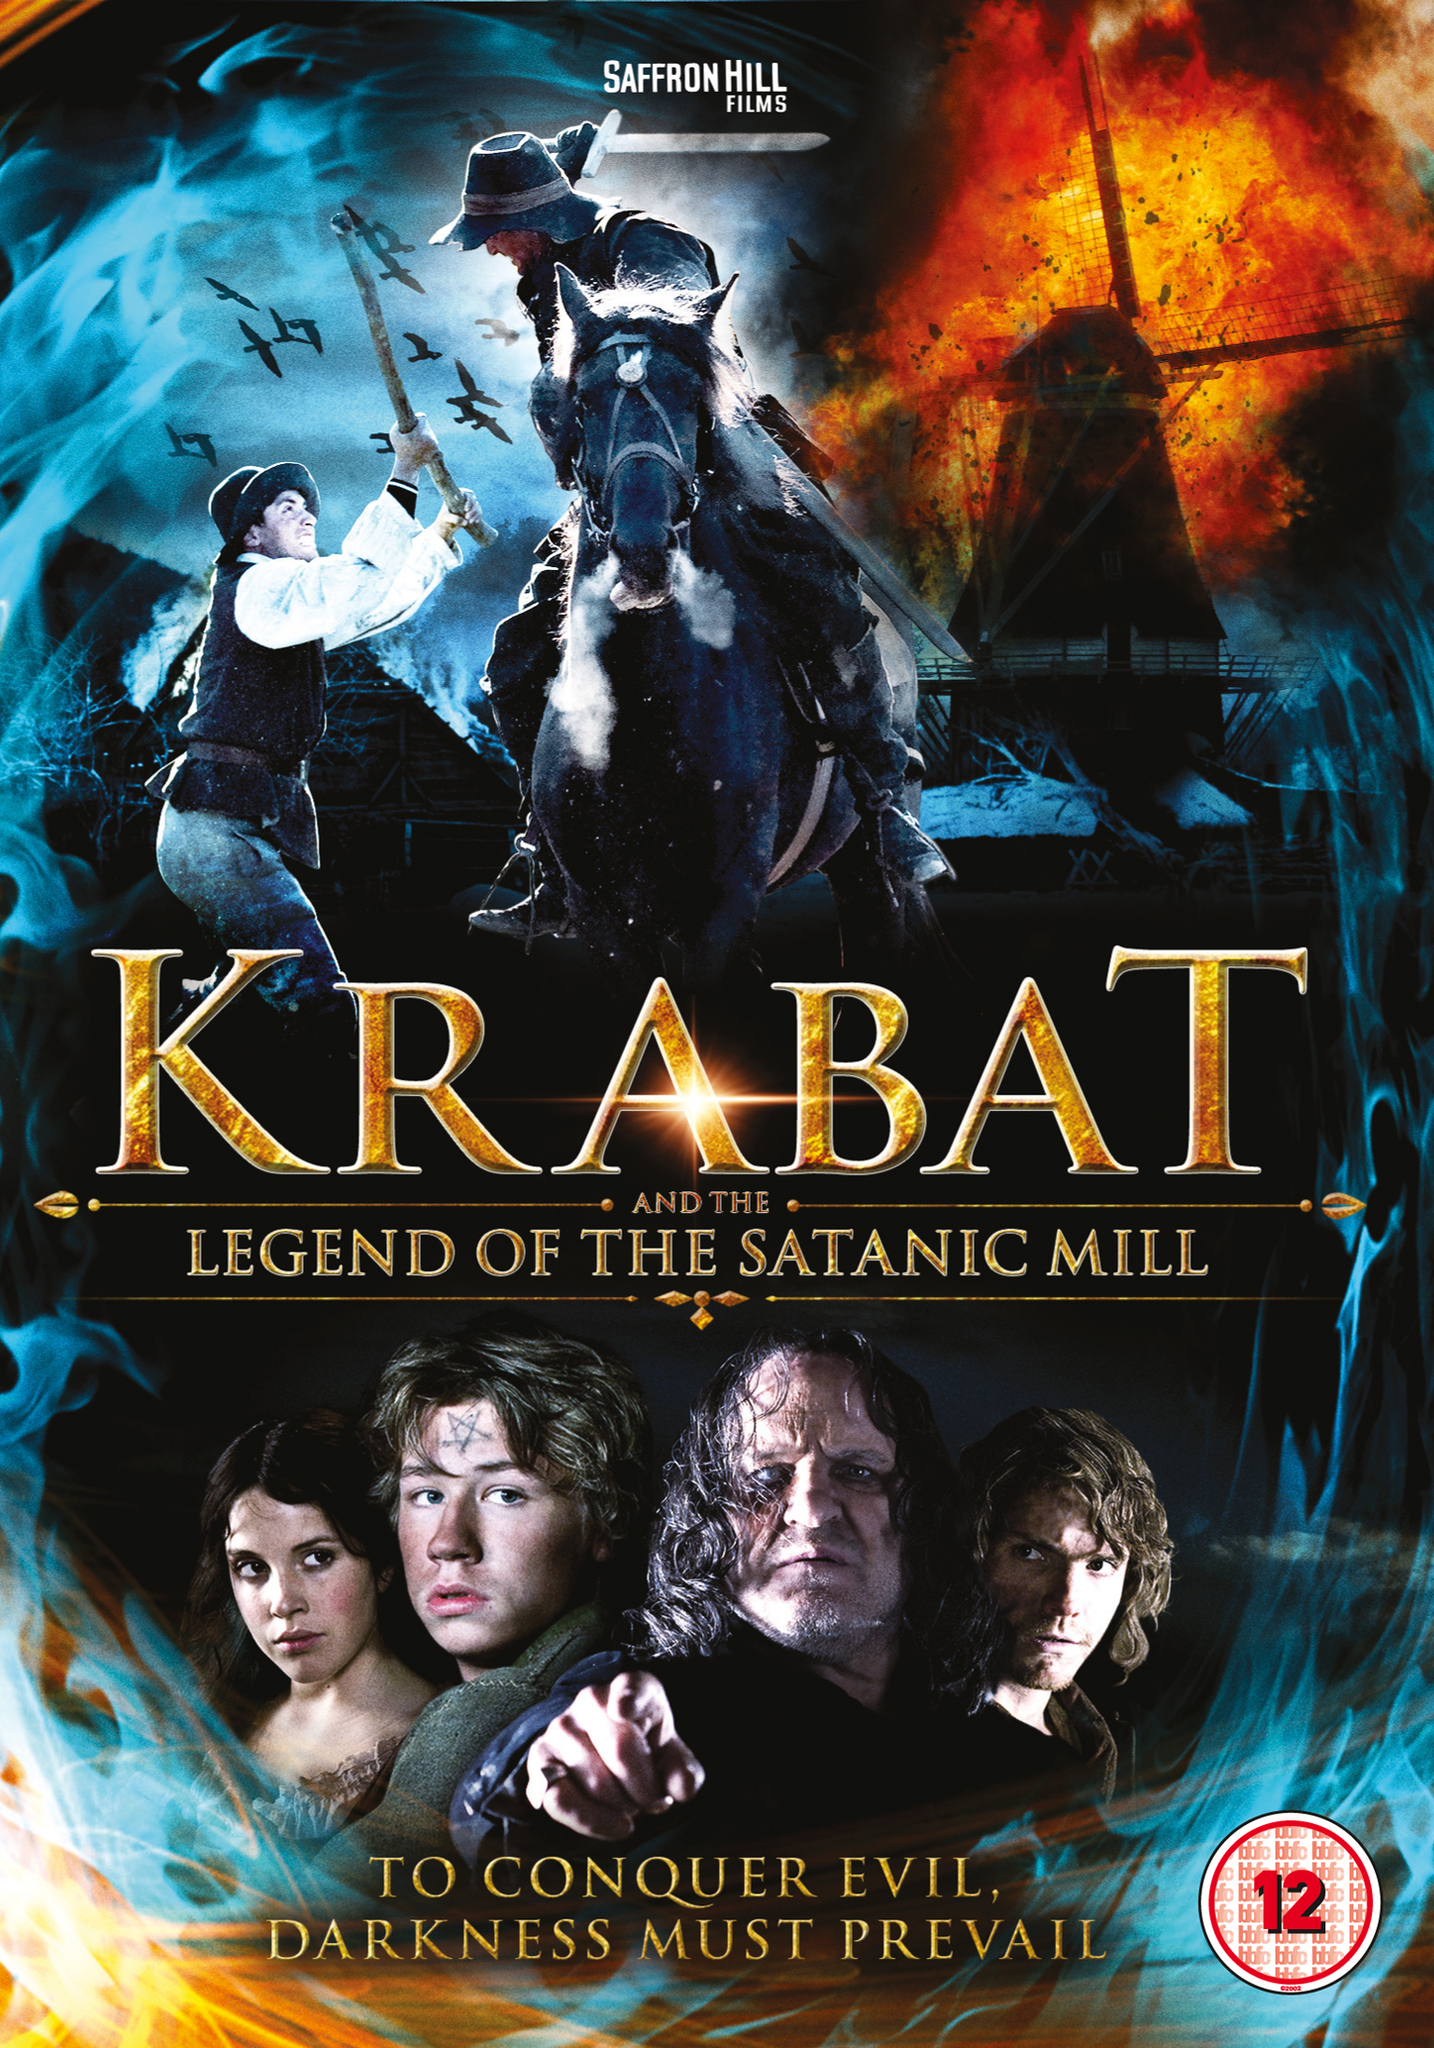 Krabat (2008) Screenshot 3